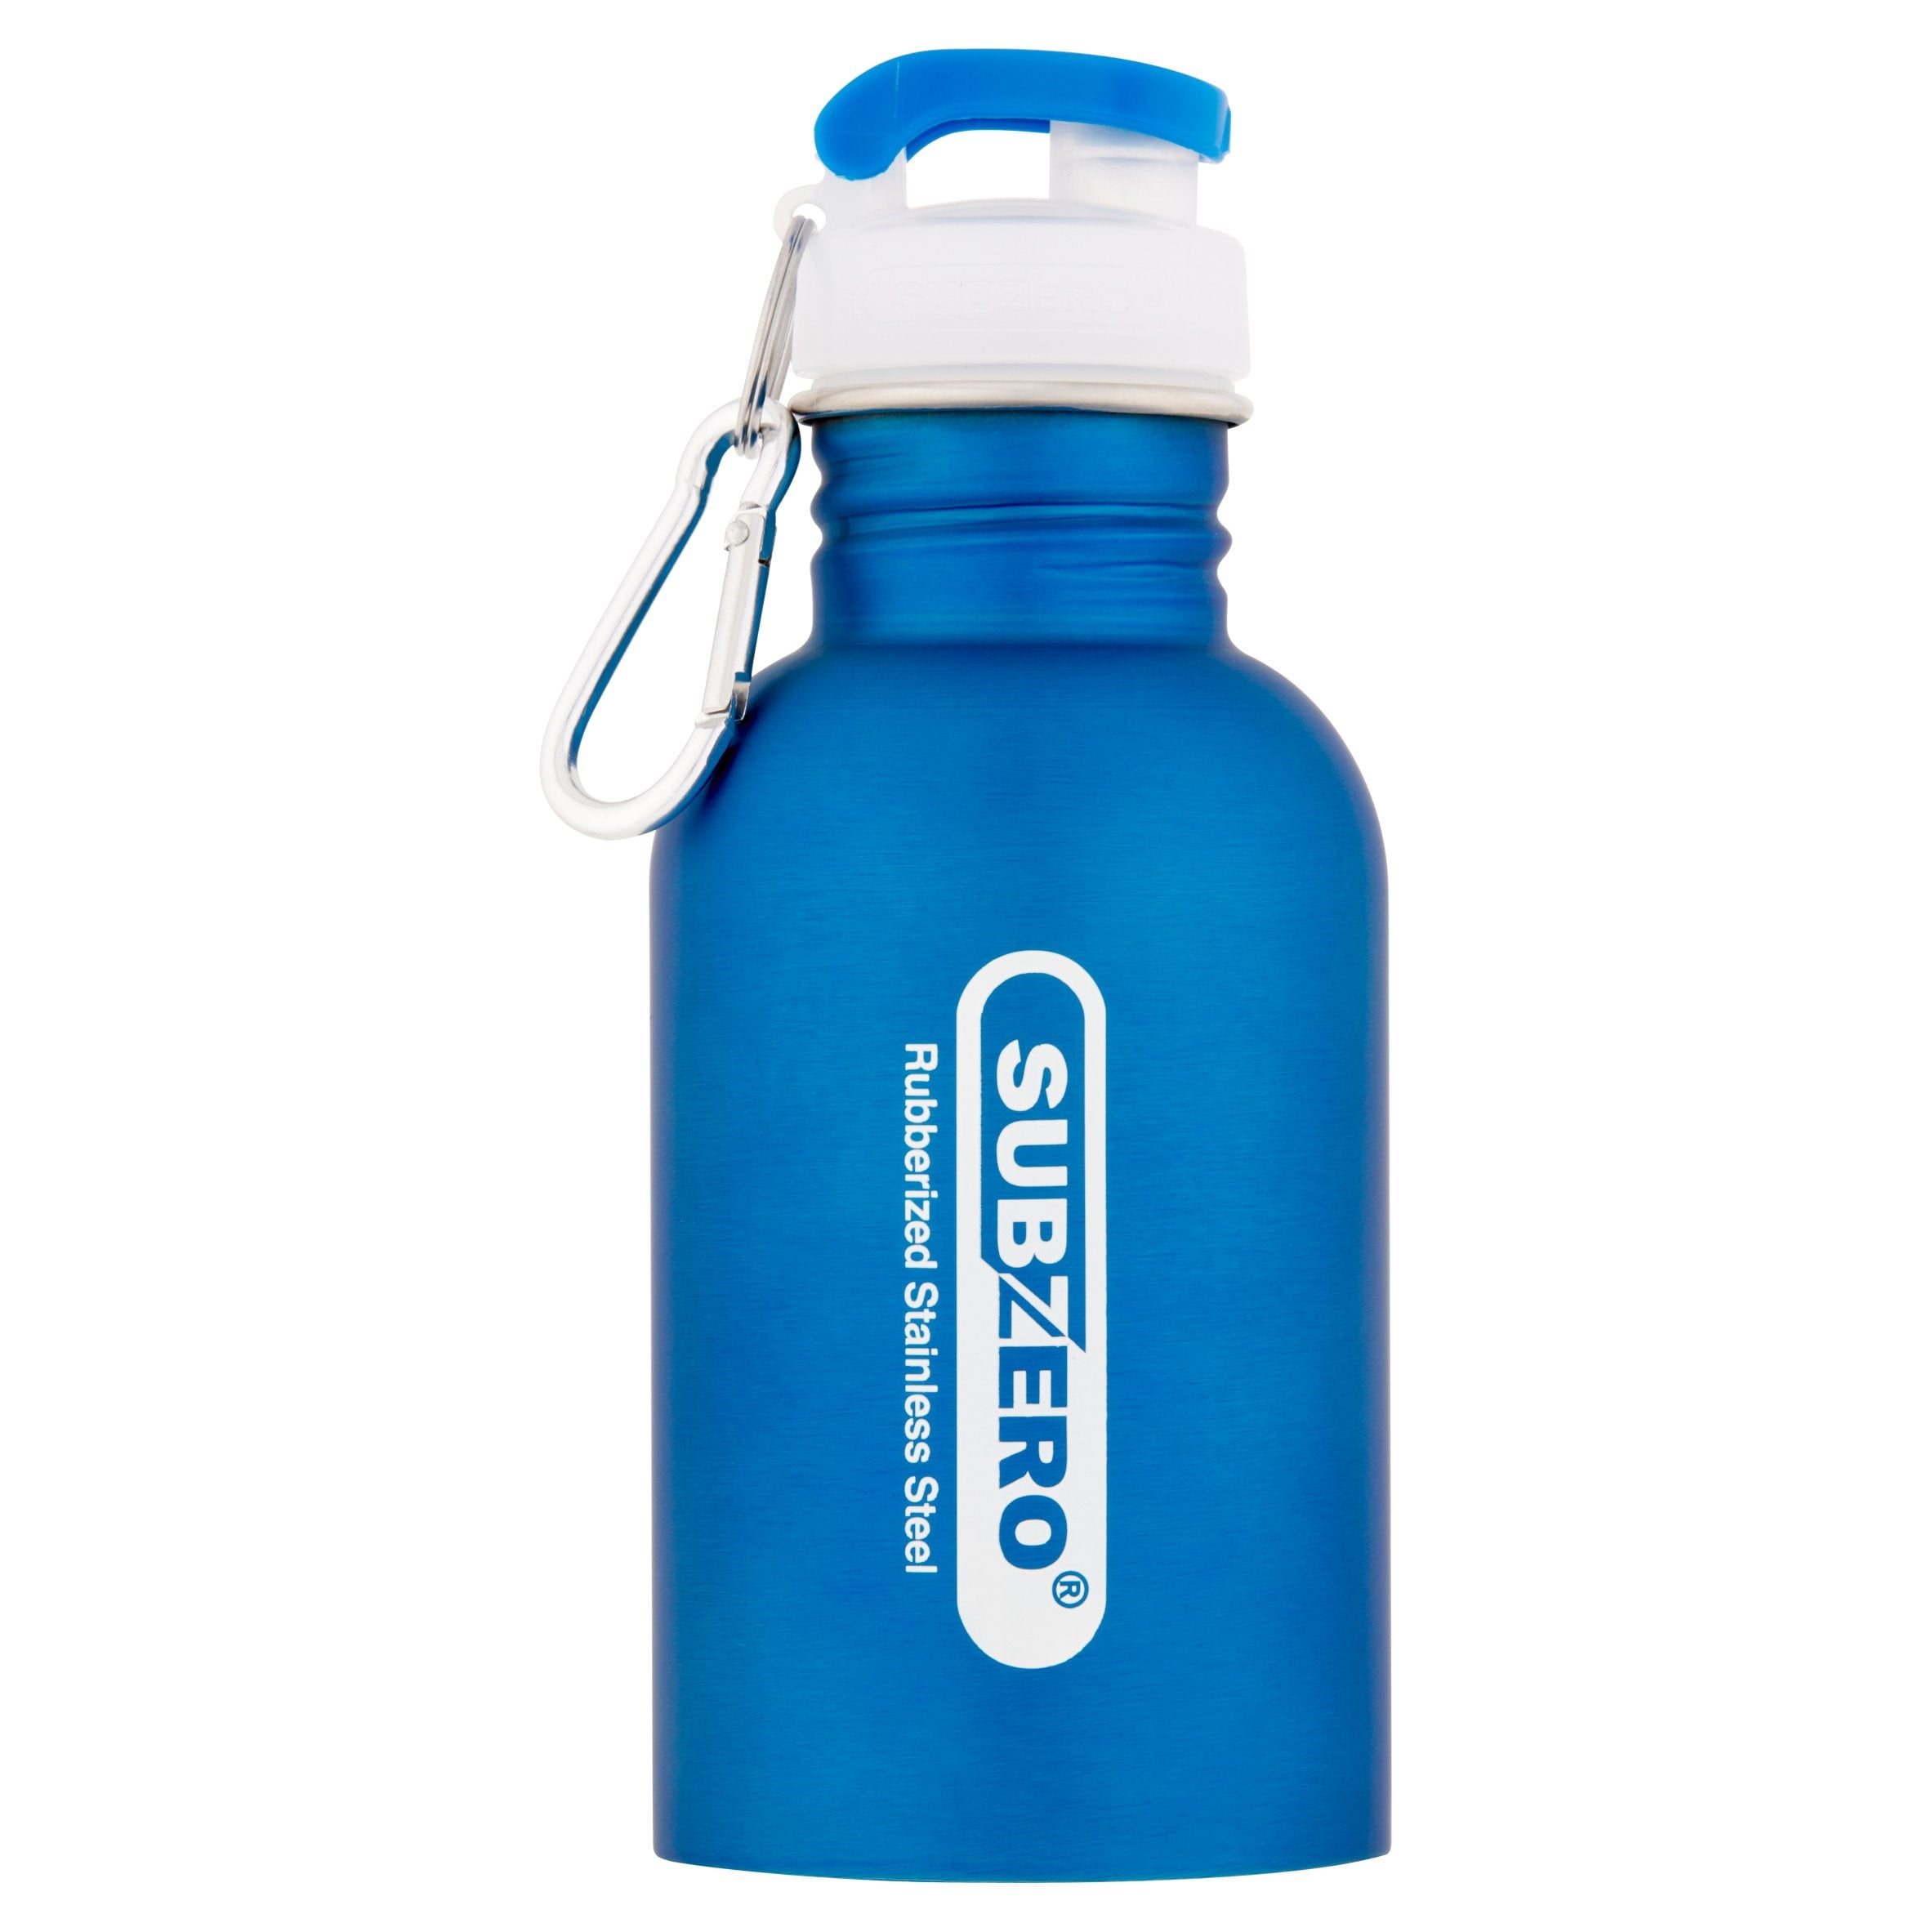 Subzero Stainless Steel Water Bottle